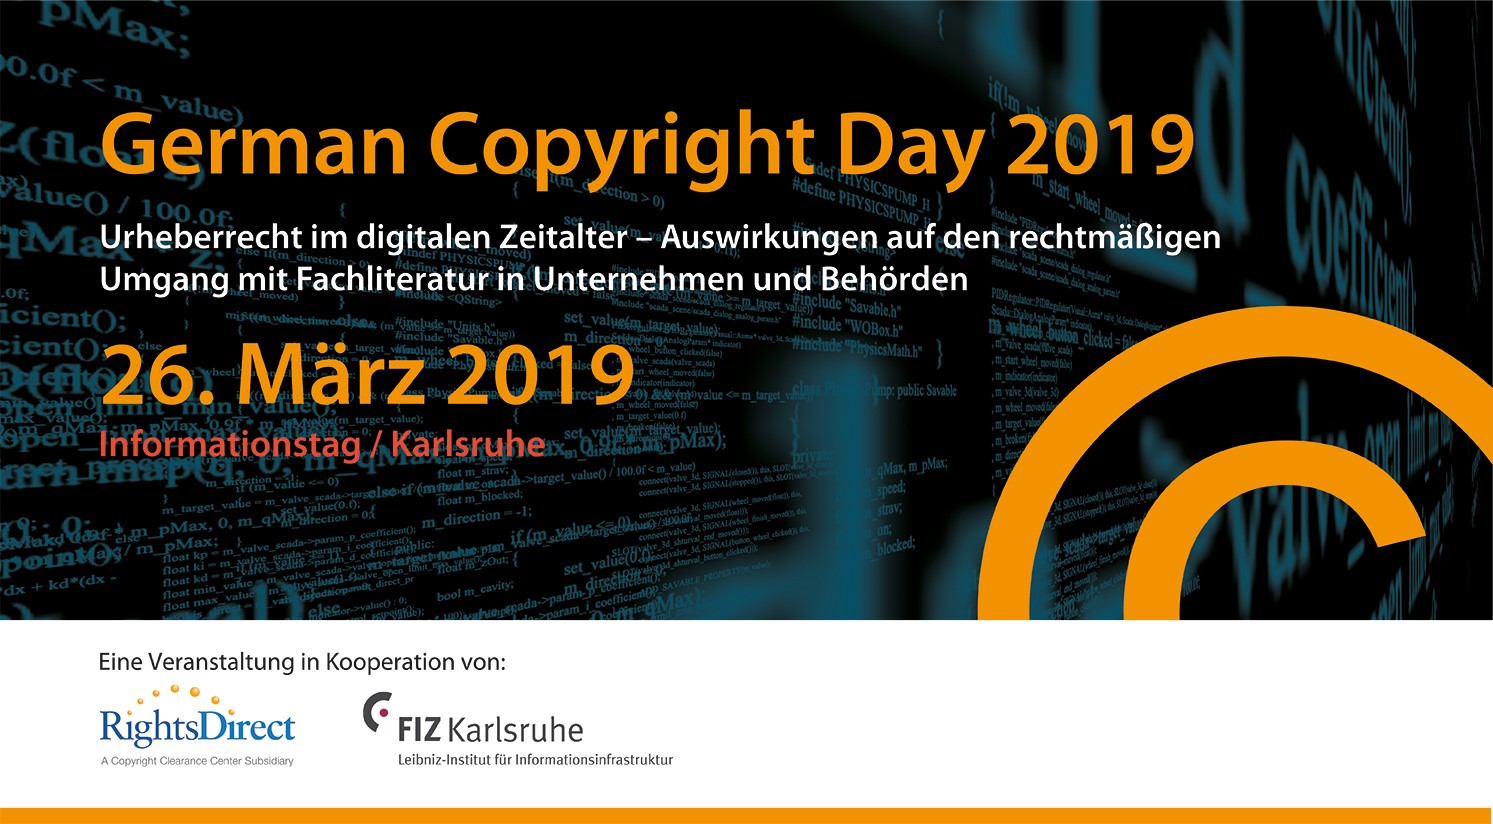 Informationstag | 23. Oktober 2017 Frankfurt - Urheberrecht im digitalen Zeitalter. Eine Veranstaltung in Kooperation von: RightsDirect und Schweitzer Fachinformationen